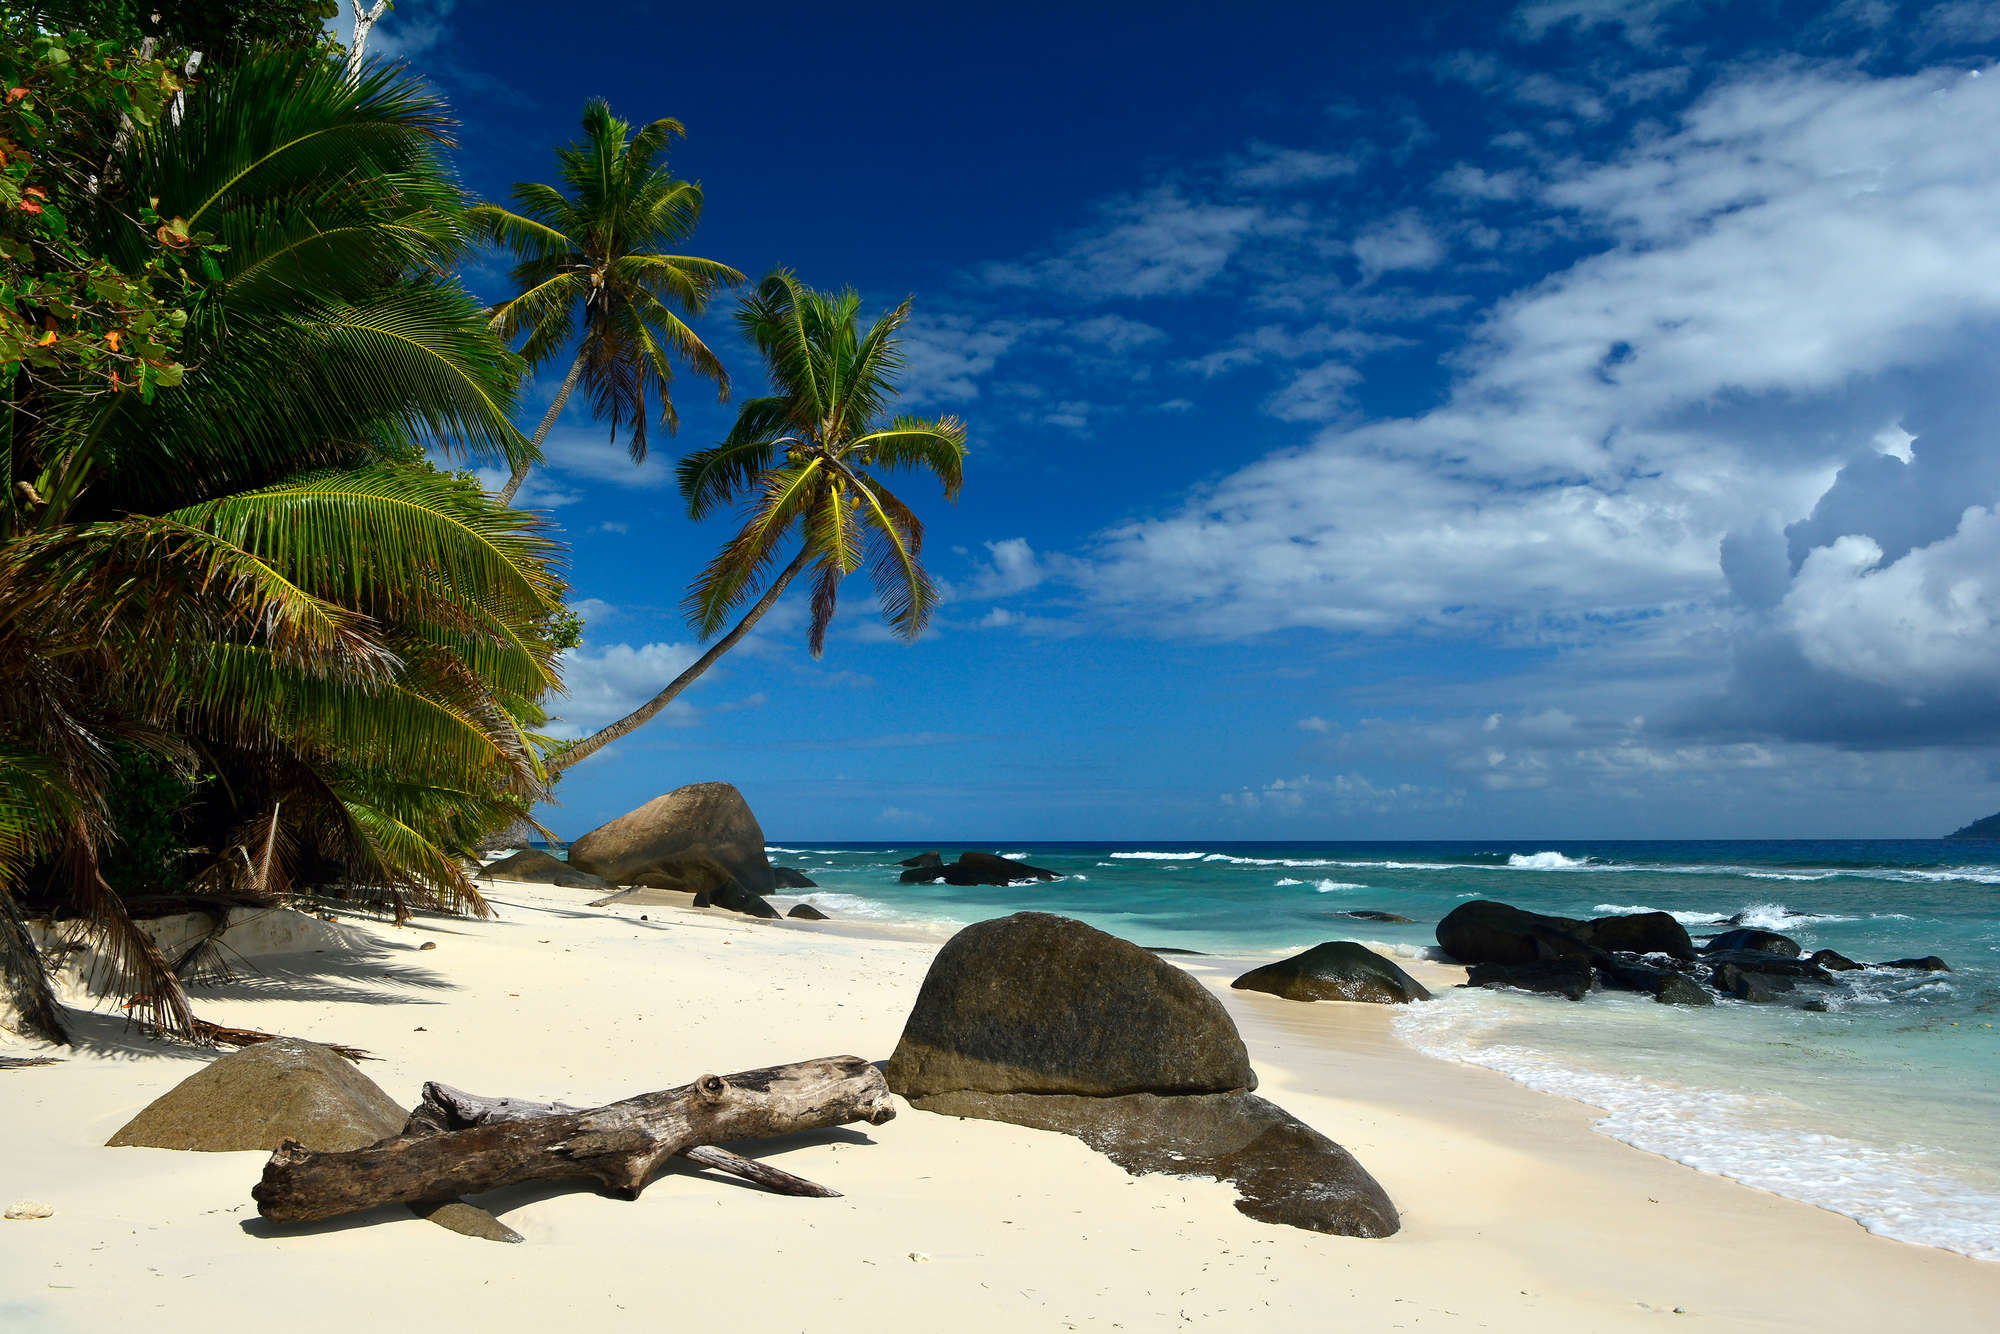             Papel Pintado Mares del Sur Seychelles Palmeras y Playa sobre tela no tejida con textura
        